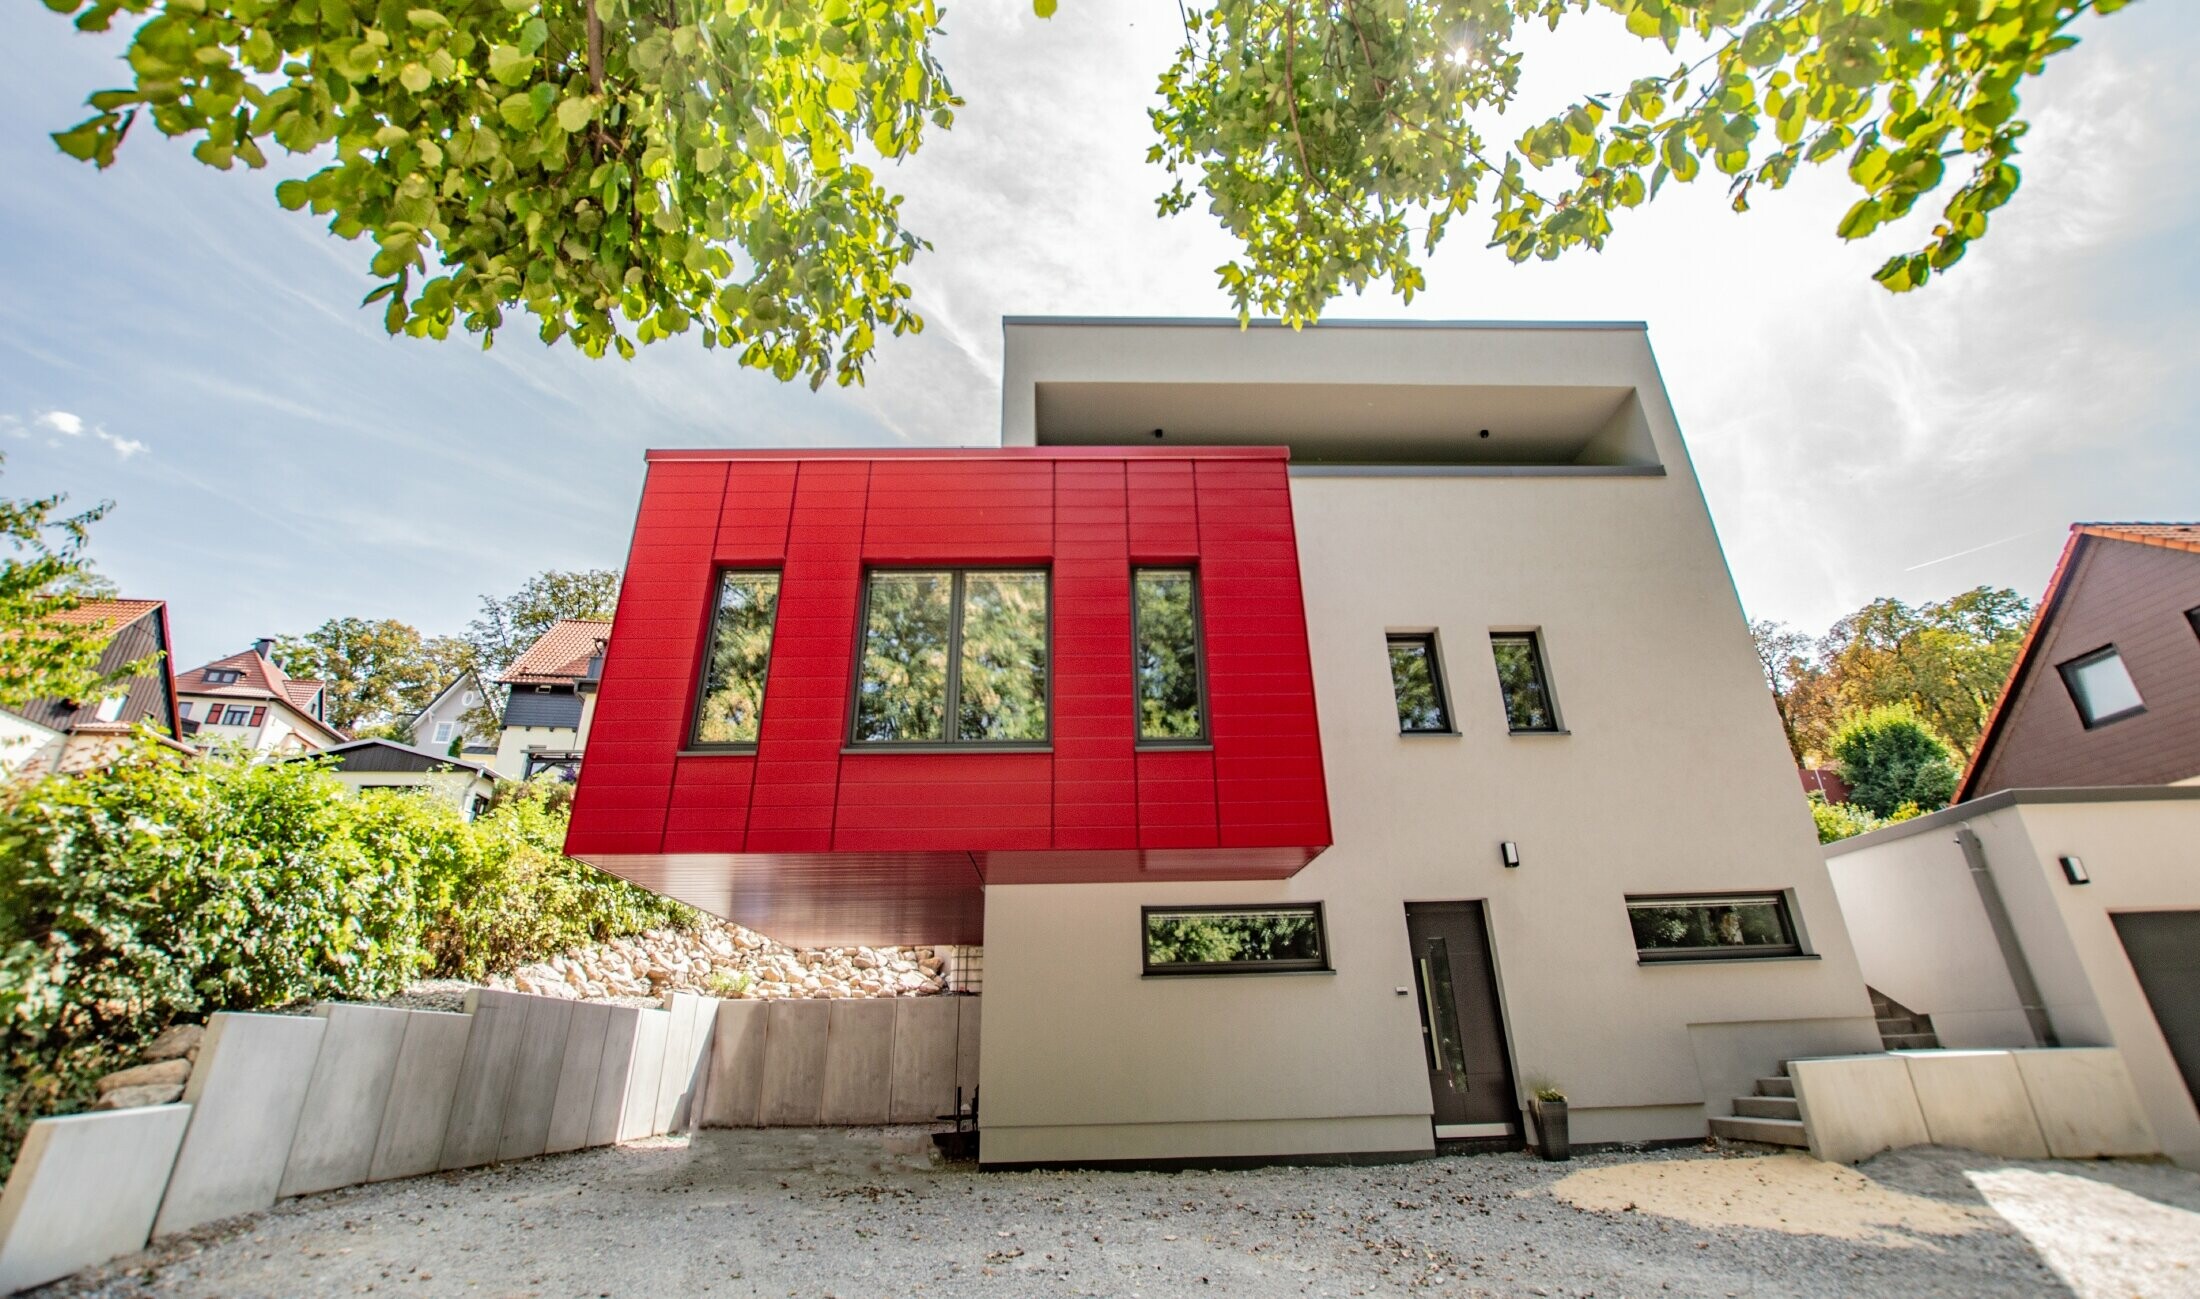 Auskragender Gebäudeteil mit den PREFA Sidings in Rubinrot verkleidet. Großer roter Erker, der sich von der weißen Fassade abhebt.